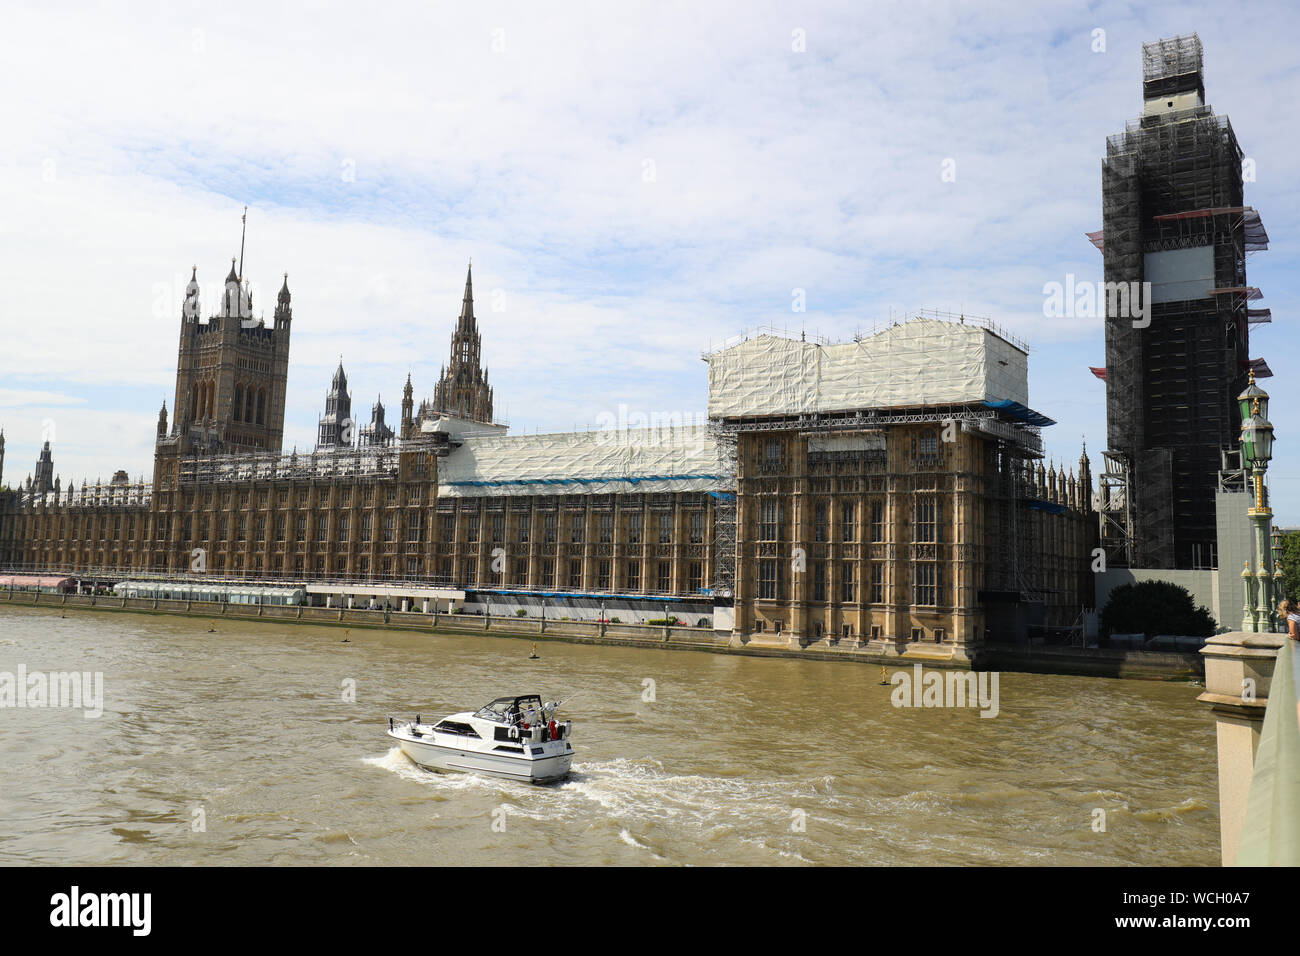 Vista de las Casas del Parlamento, el Primer Ministro Boris Johnson está solicitando la suspensión del Parlamento por delante de un discurso de la Reina el 14 de octubre. Suspendiendo el Parlamento reducirá el tiempo de los oponentes para programar las actividades parlamentarias antes del plazo Brexit. Foto de stock